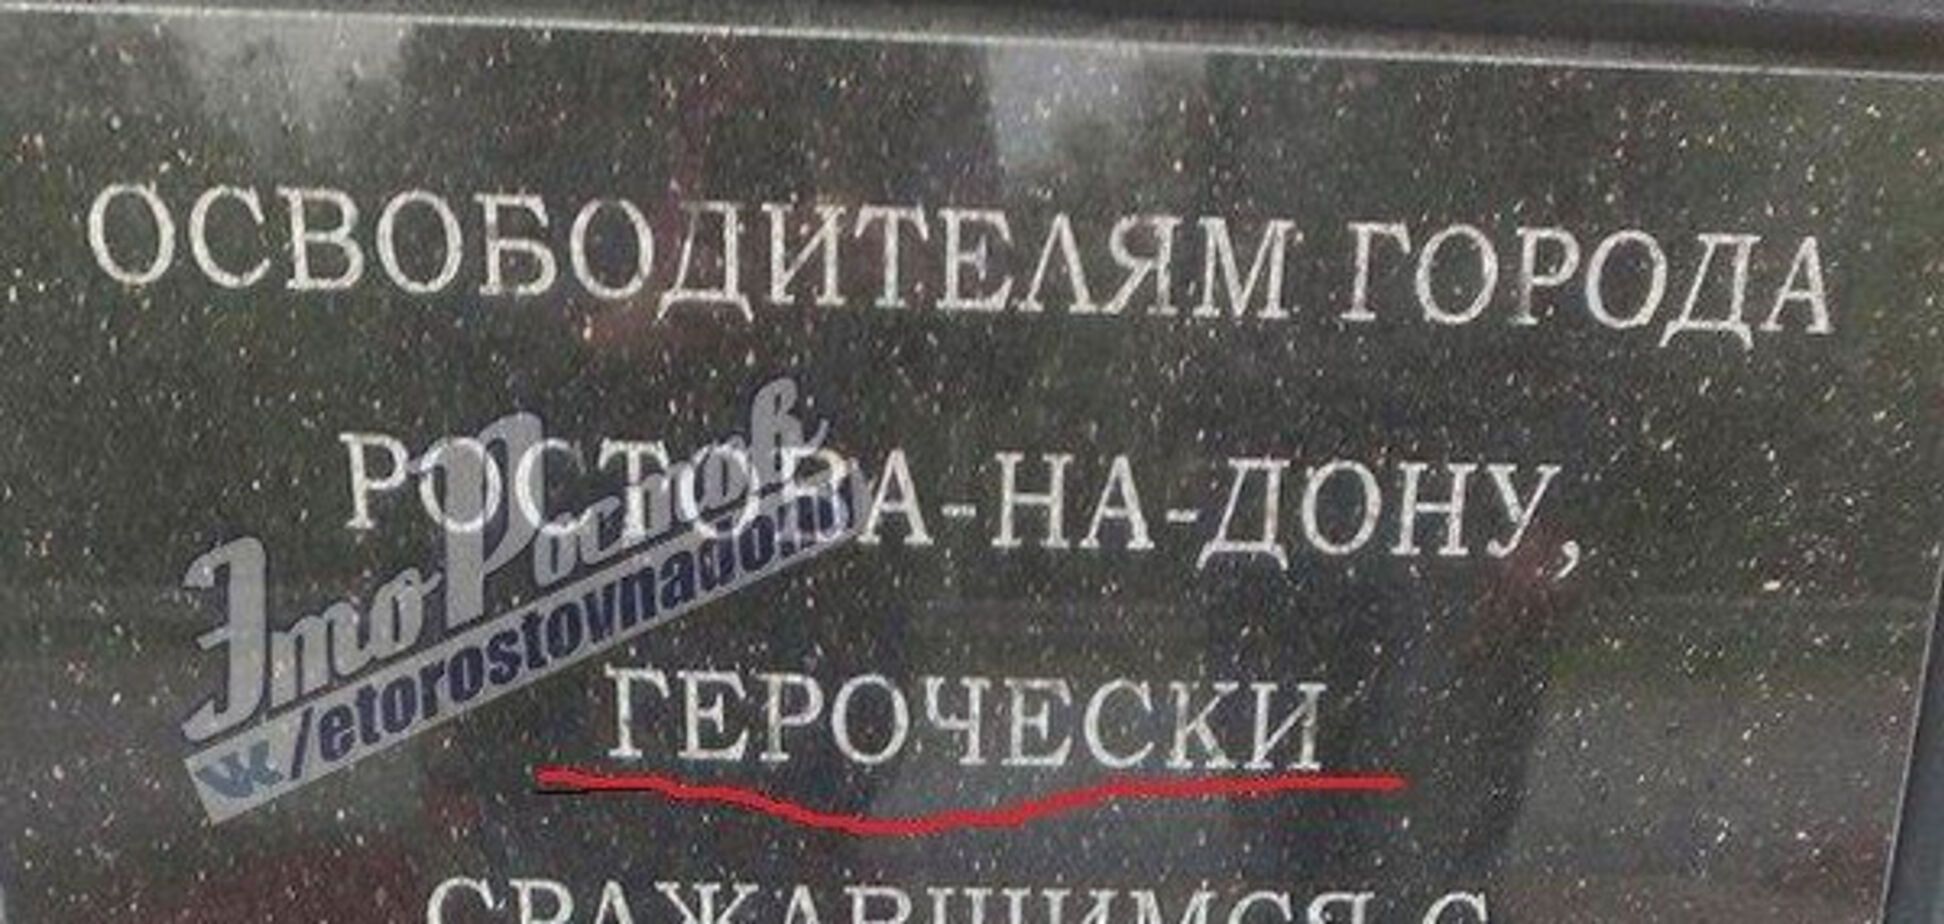 Бинго! Защитники русского языка поставили памятник 'дедам воевали' с ошибкой